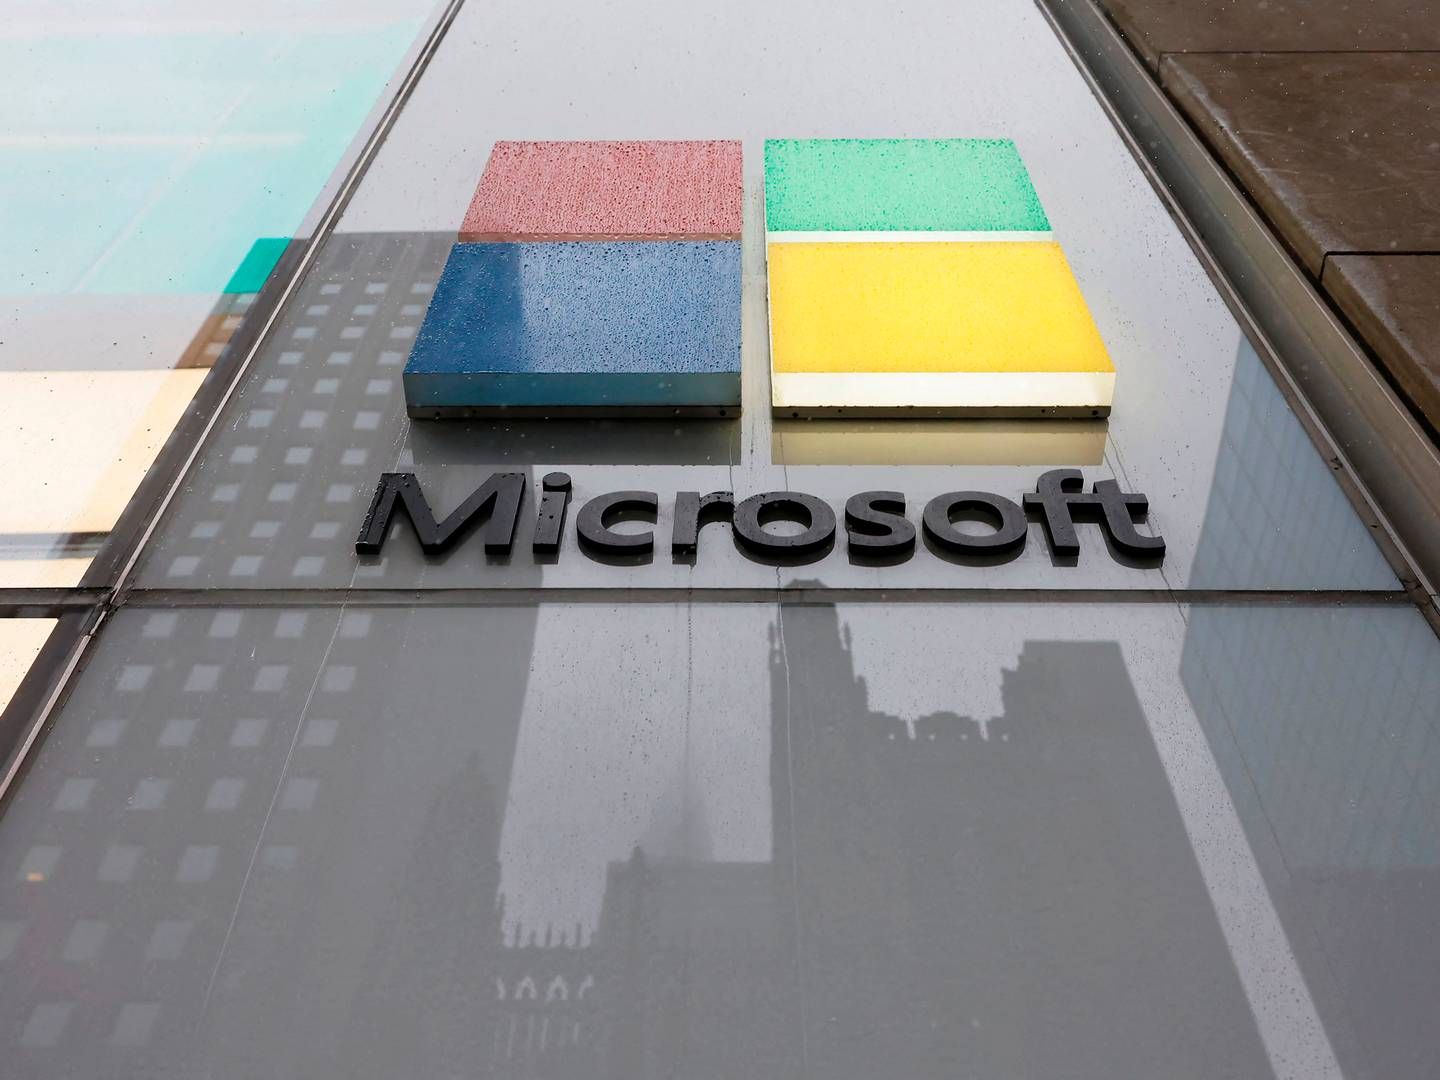 Det er softwarekæmpen Microsoft, som relativt set løfter mest af alle i markedet med en fremgang på 1,8 pct. | Foto: Michael M. Santiago